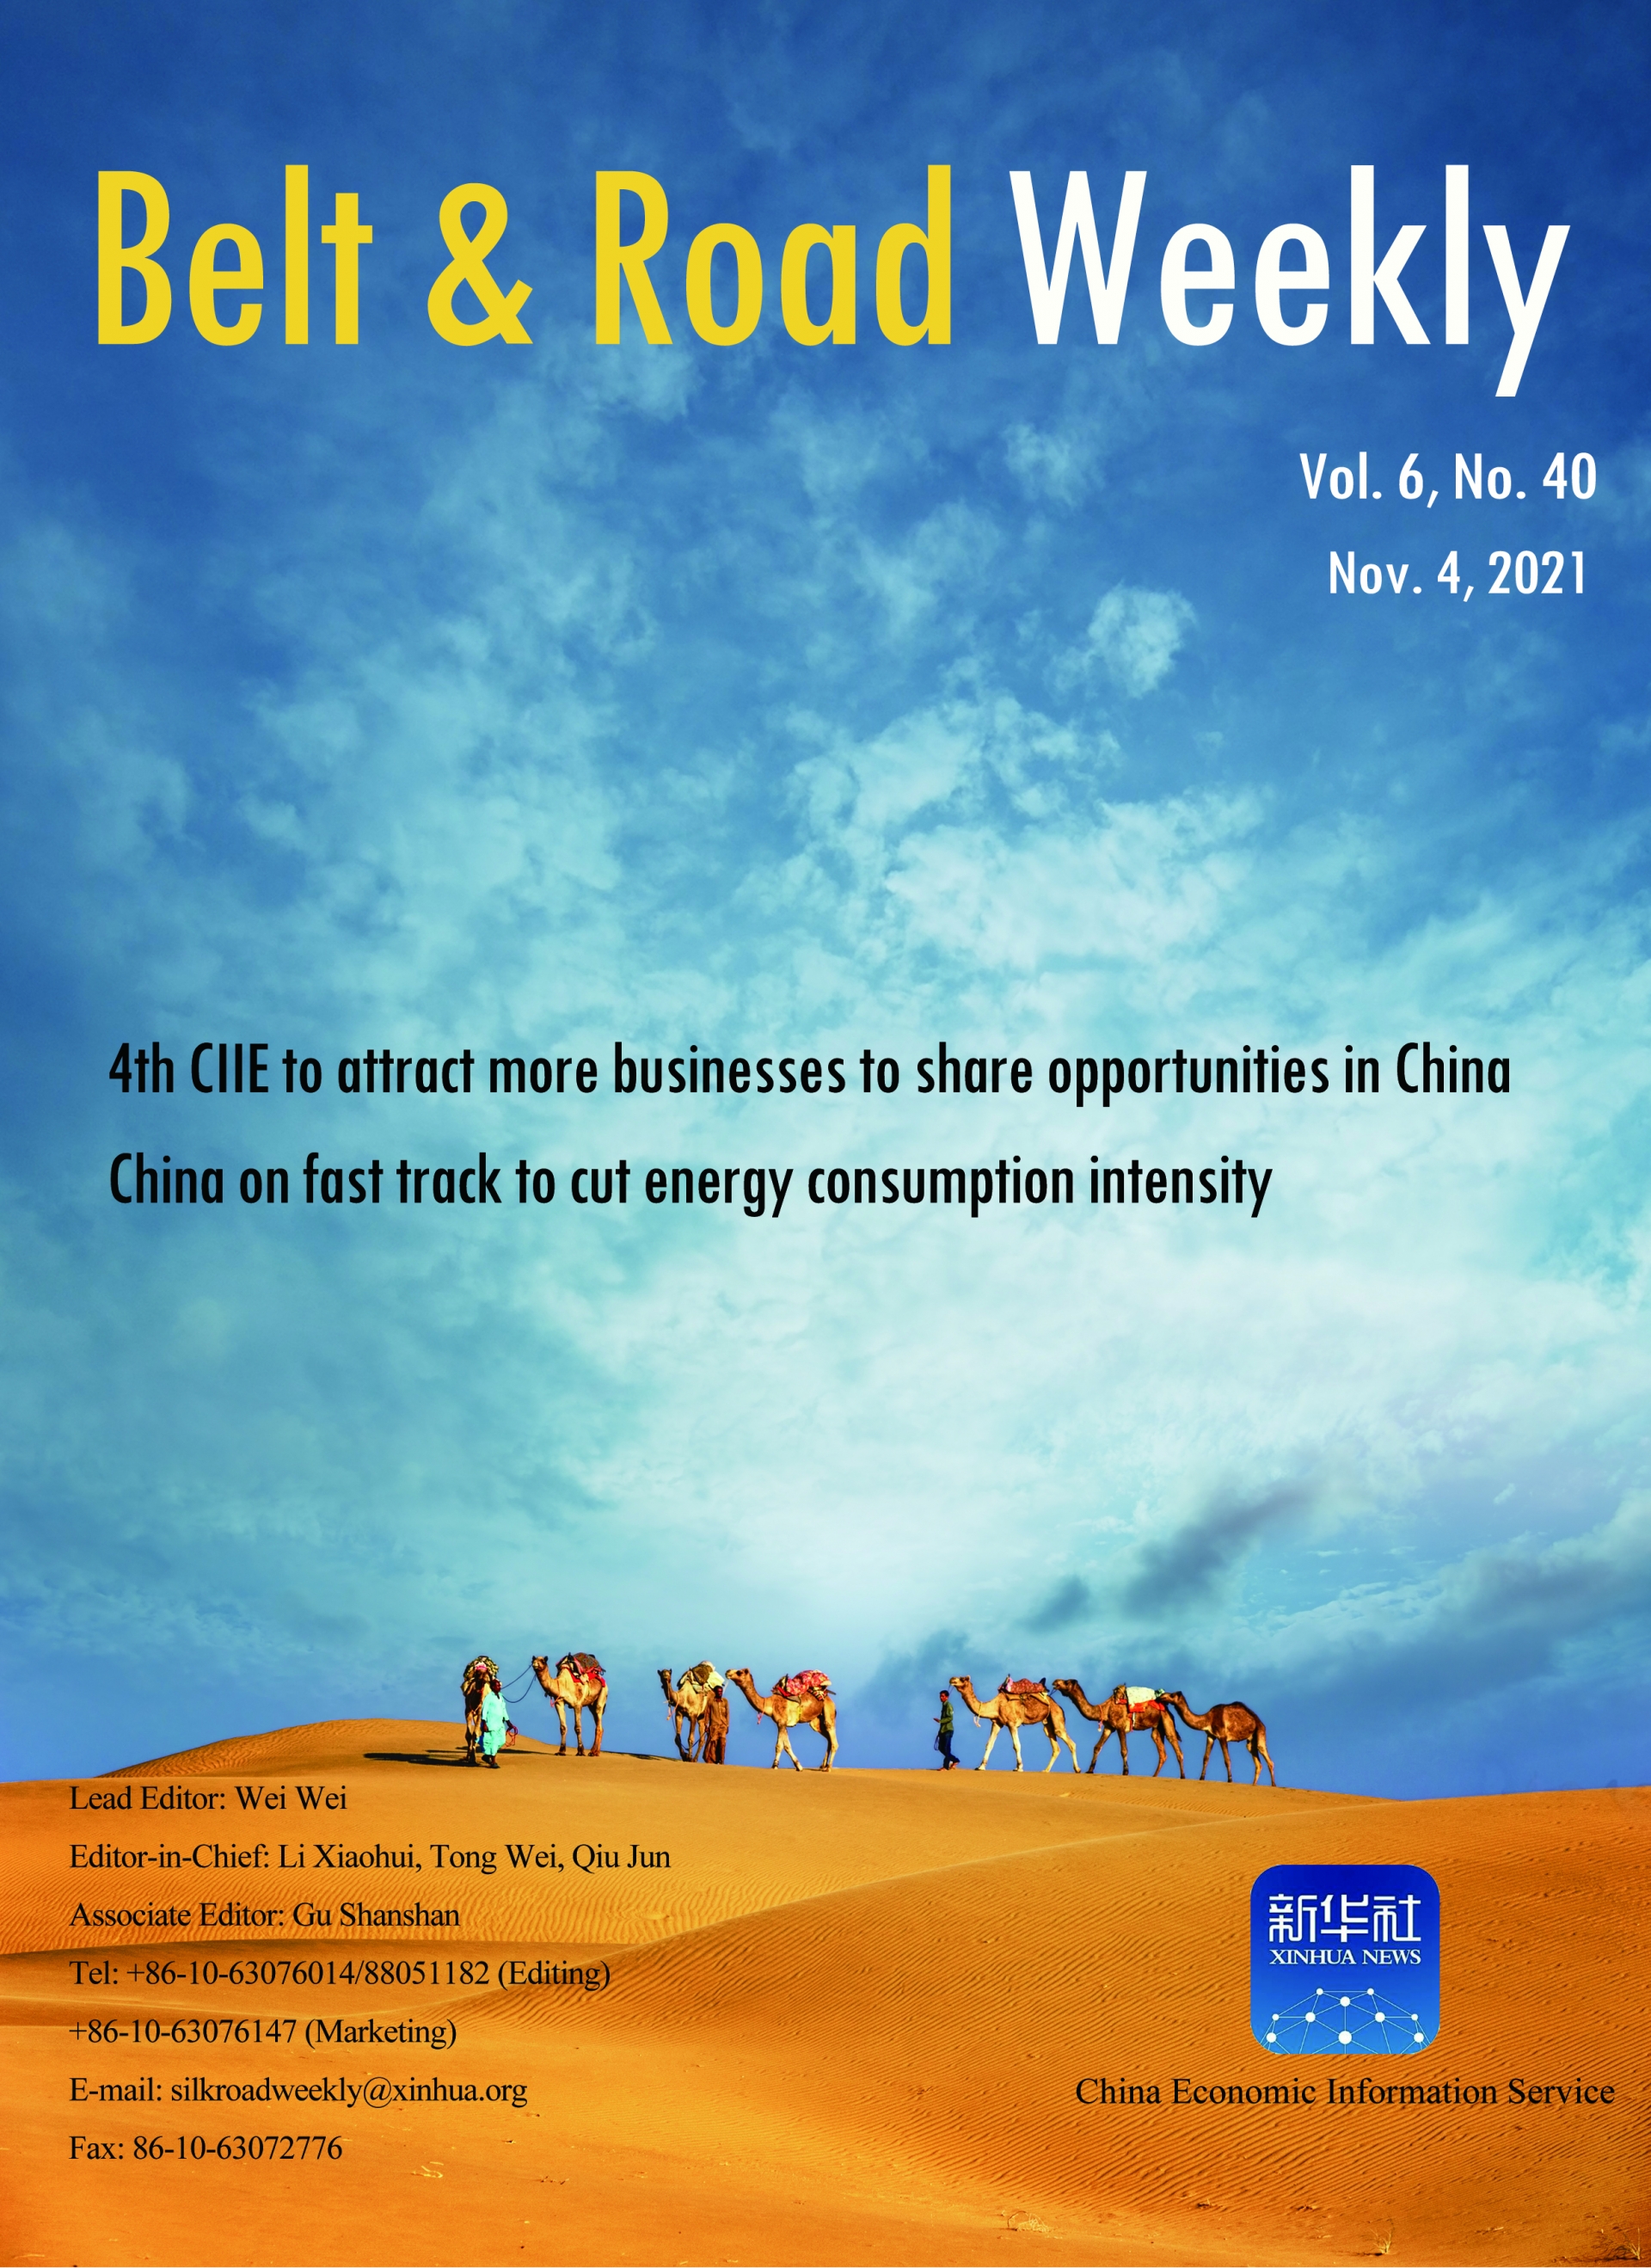 Belt & Road Weekly Vol. 6 No. 40